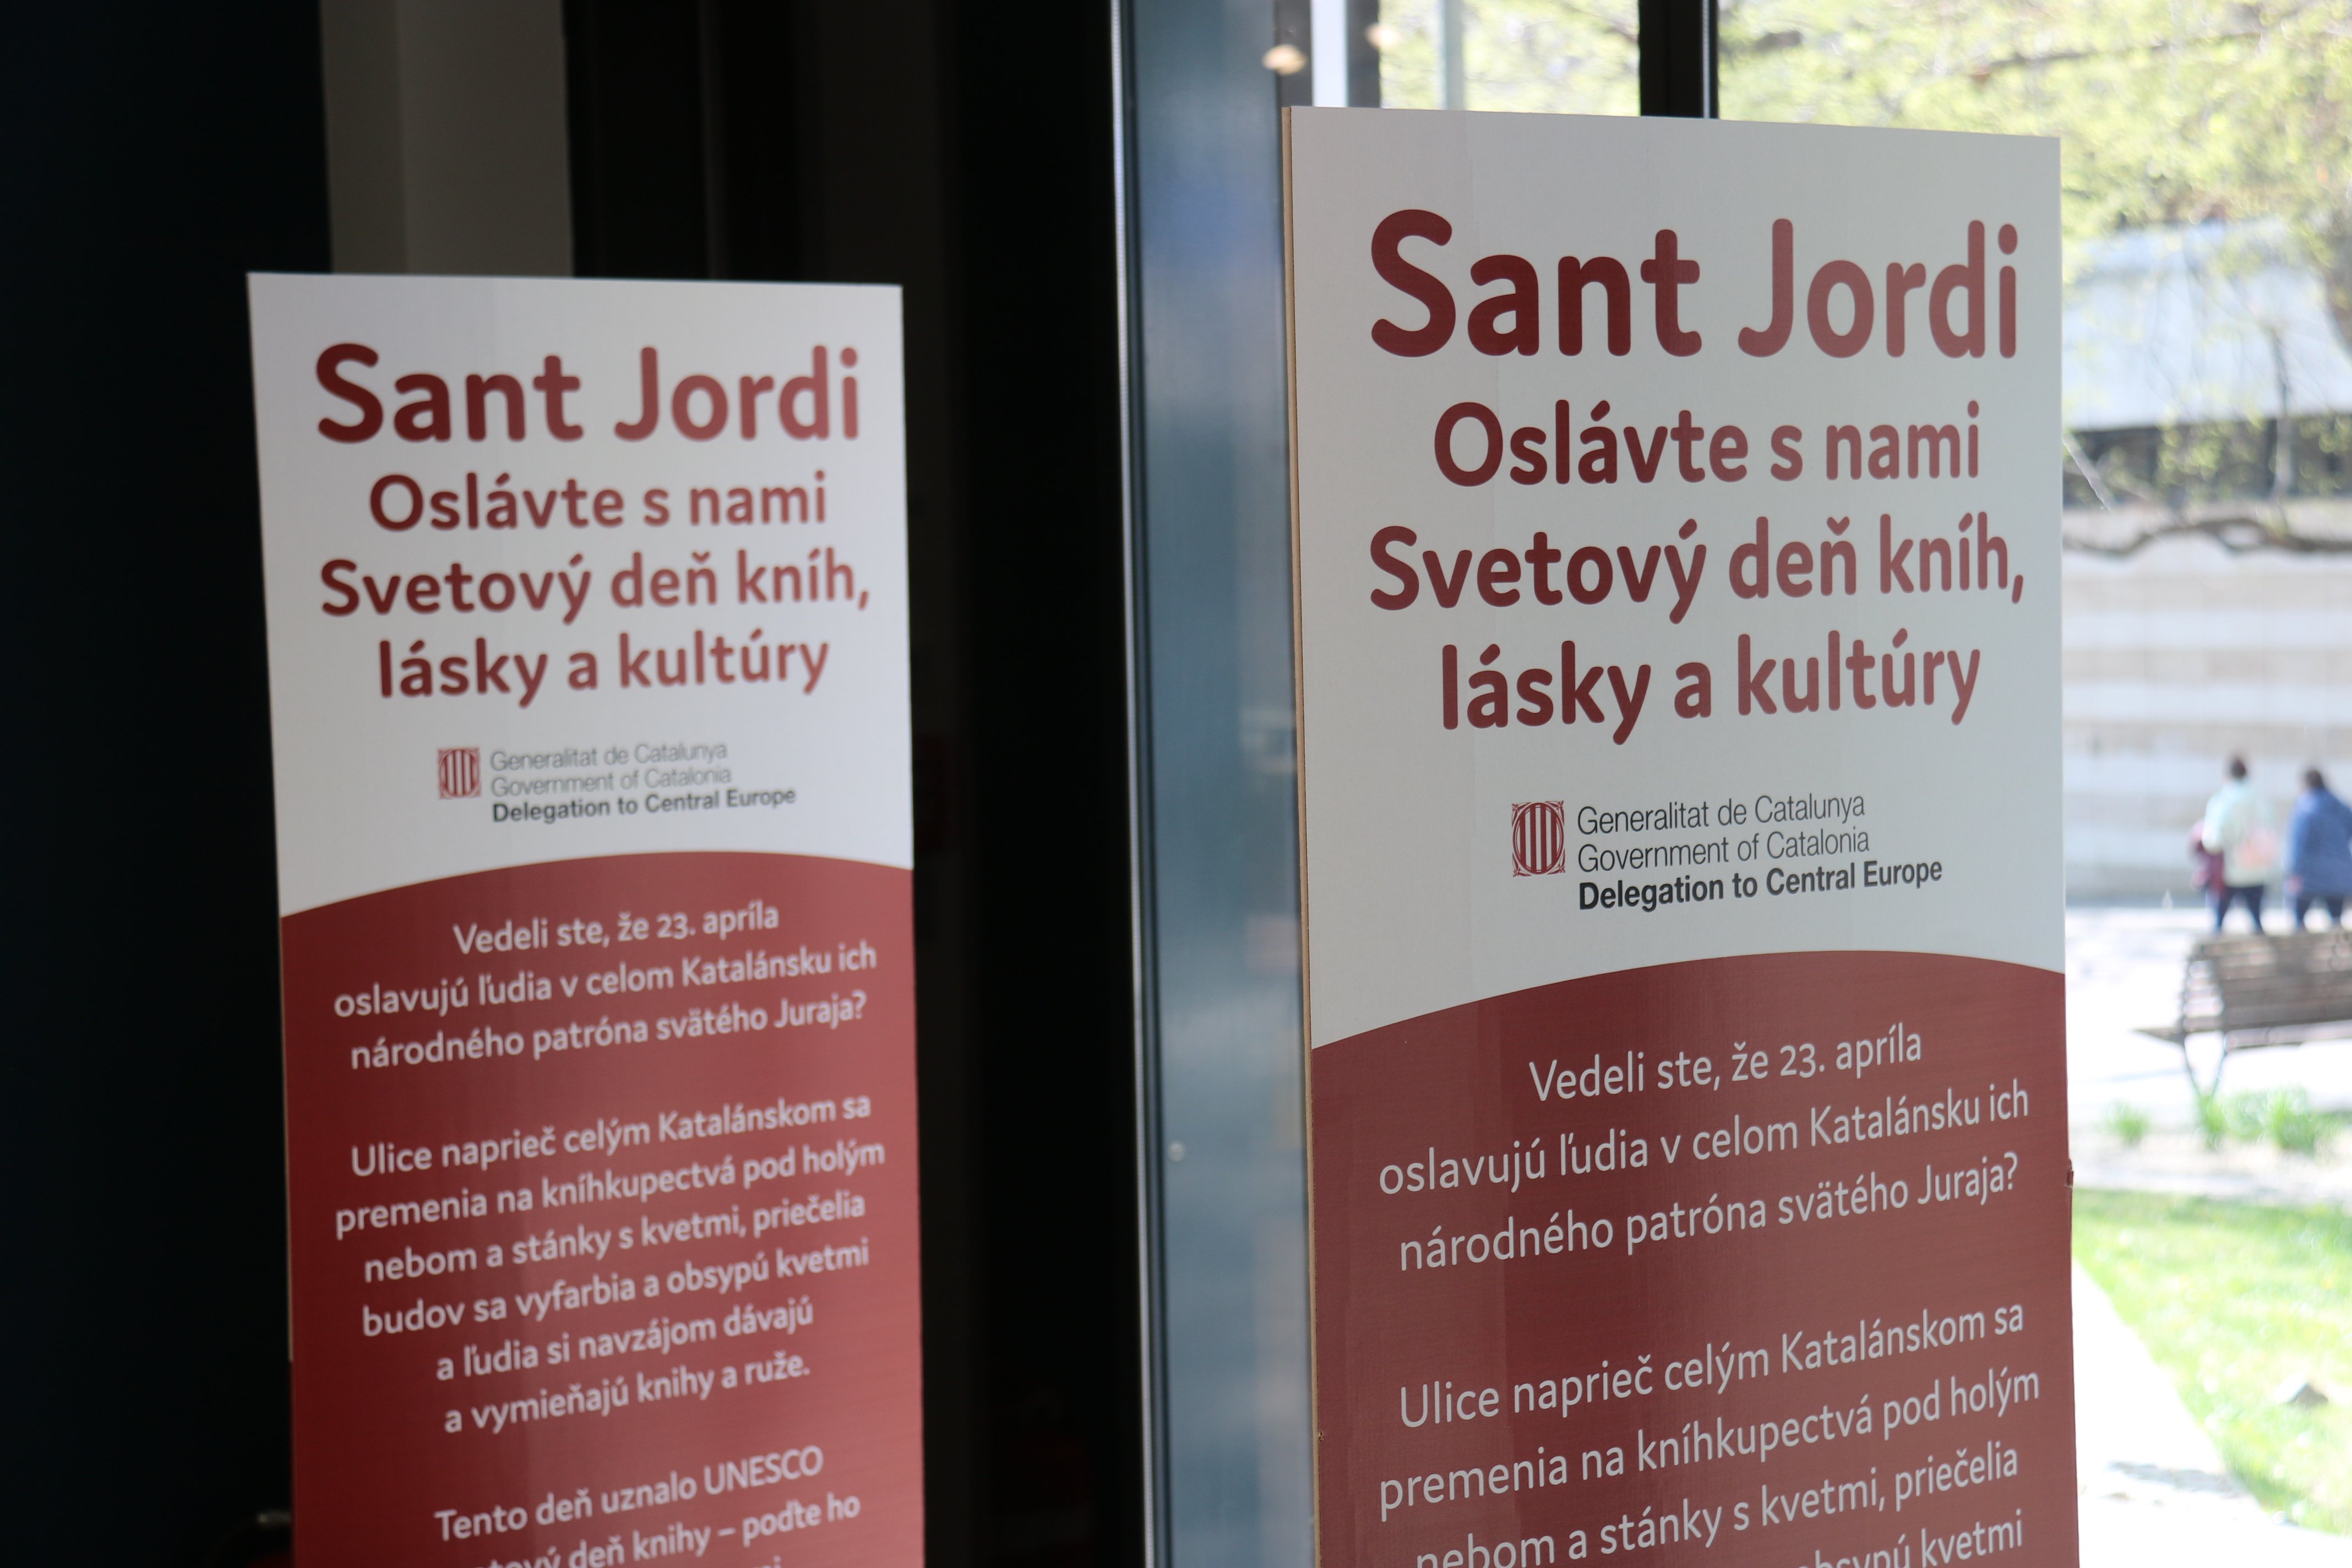 Eslovaquia se suma al Sant Jordi y lo celebrará por primera vez